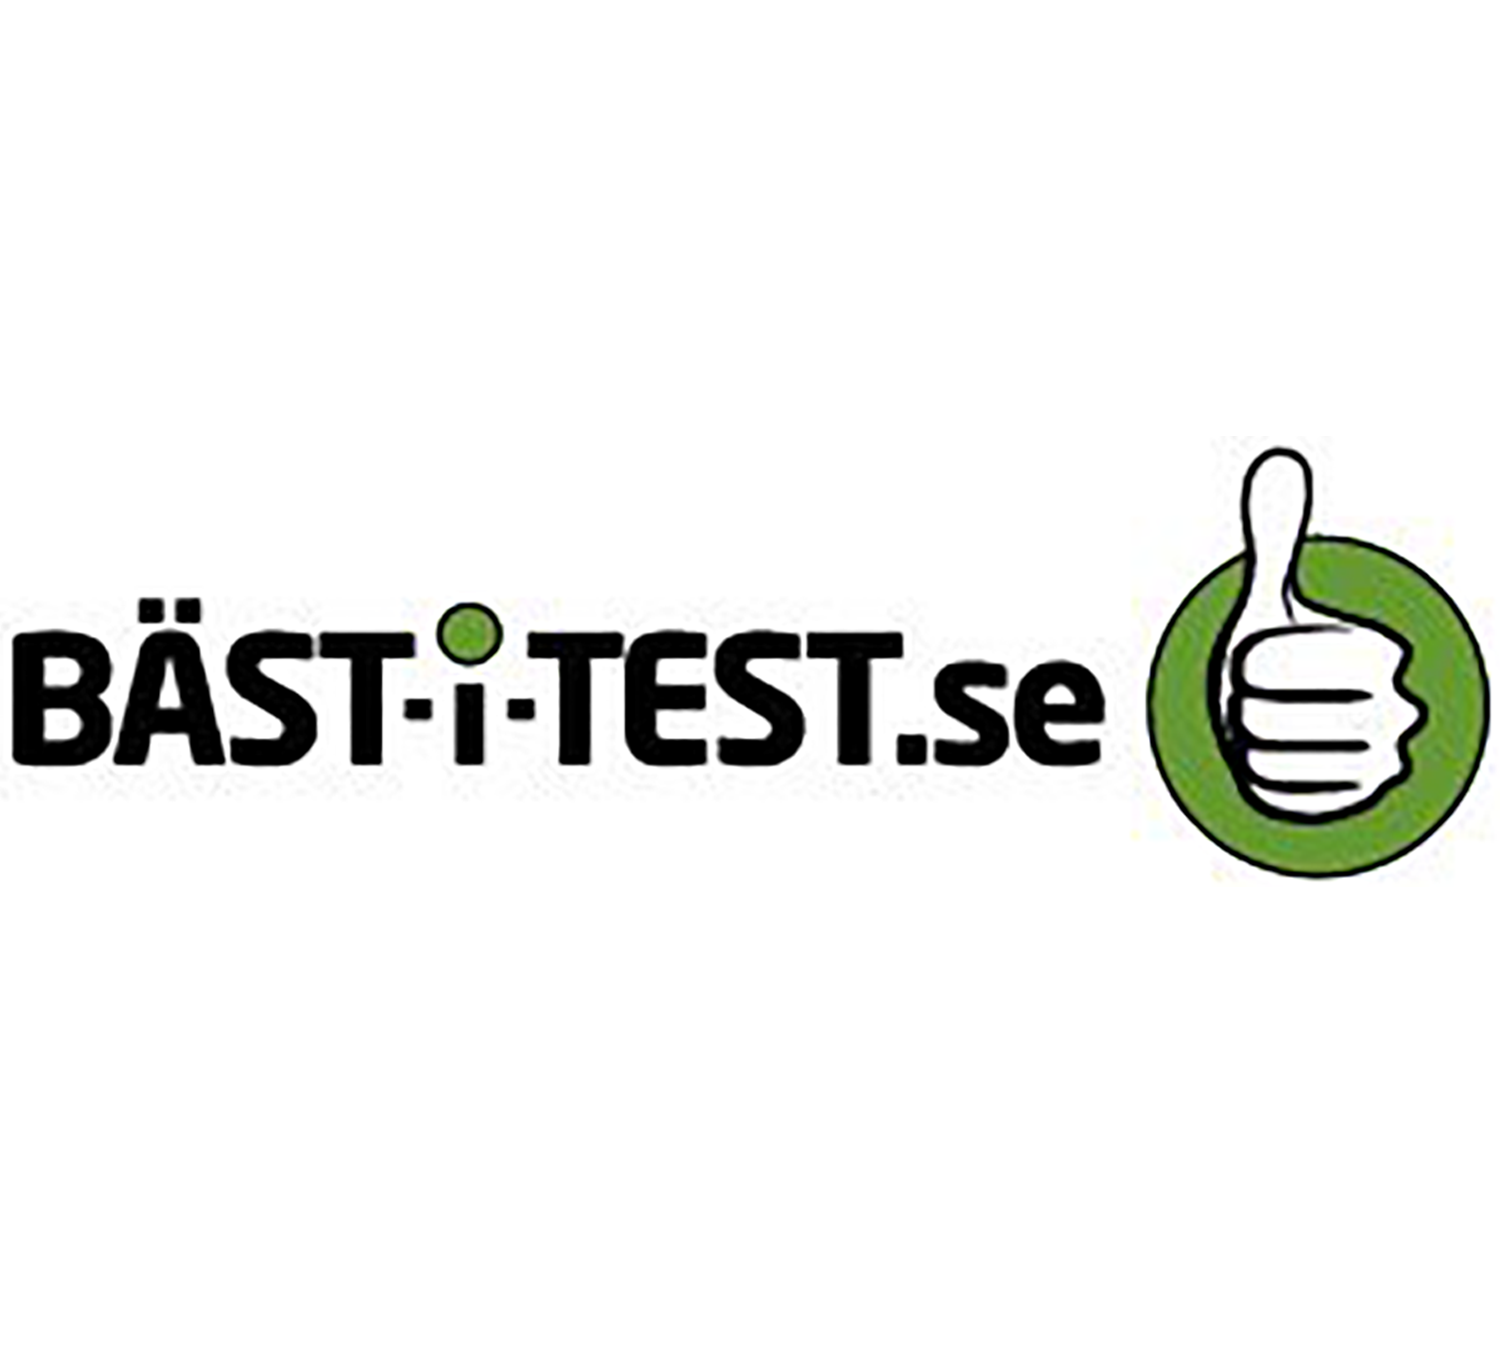 Best-i-test-se.png